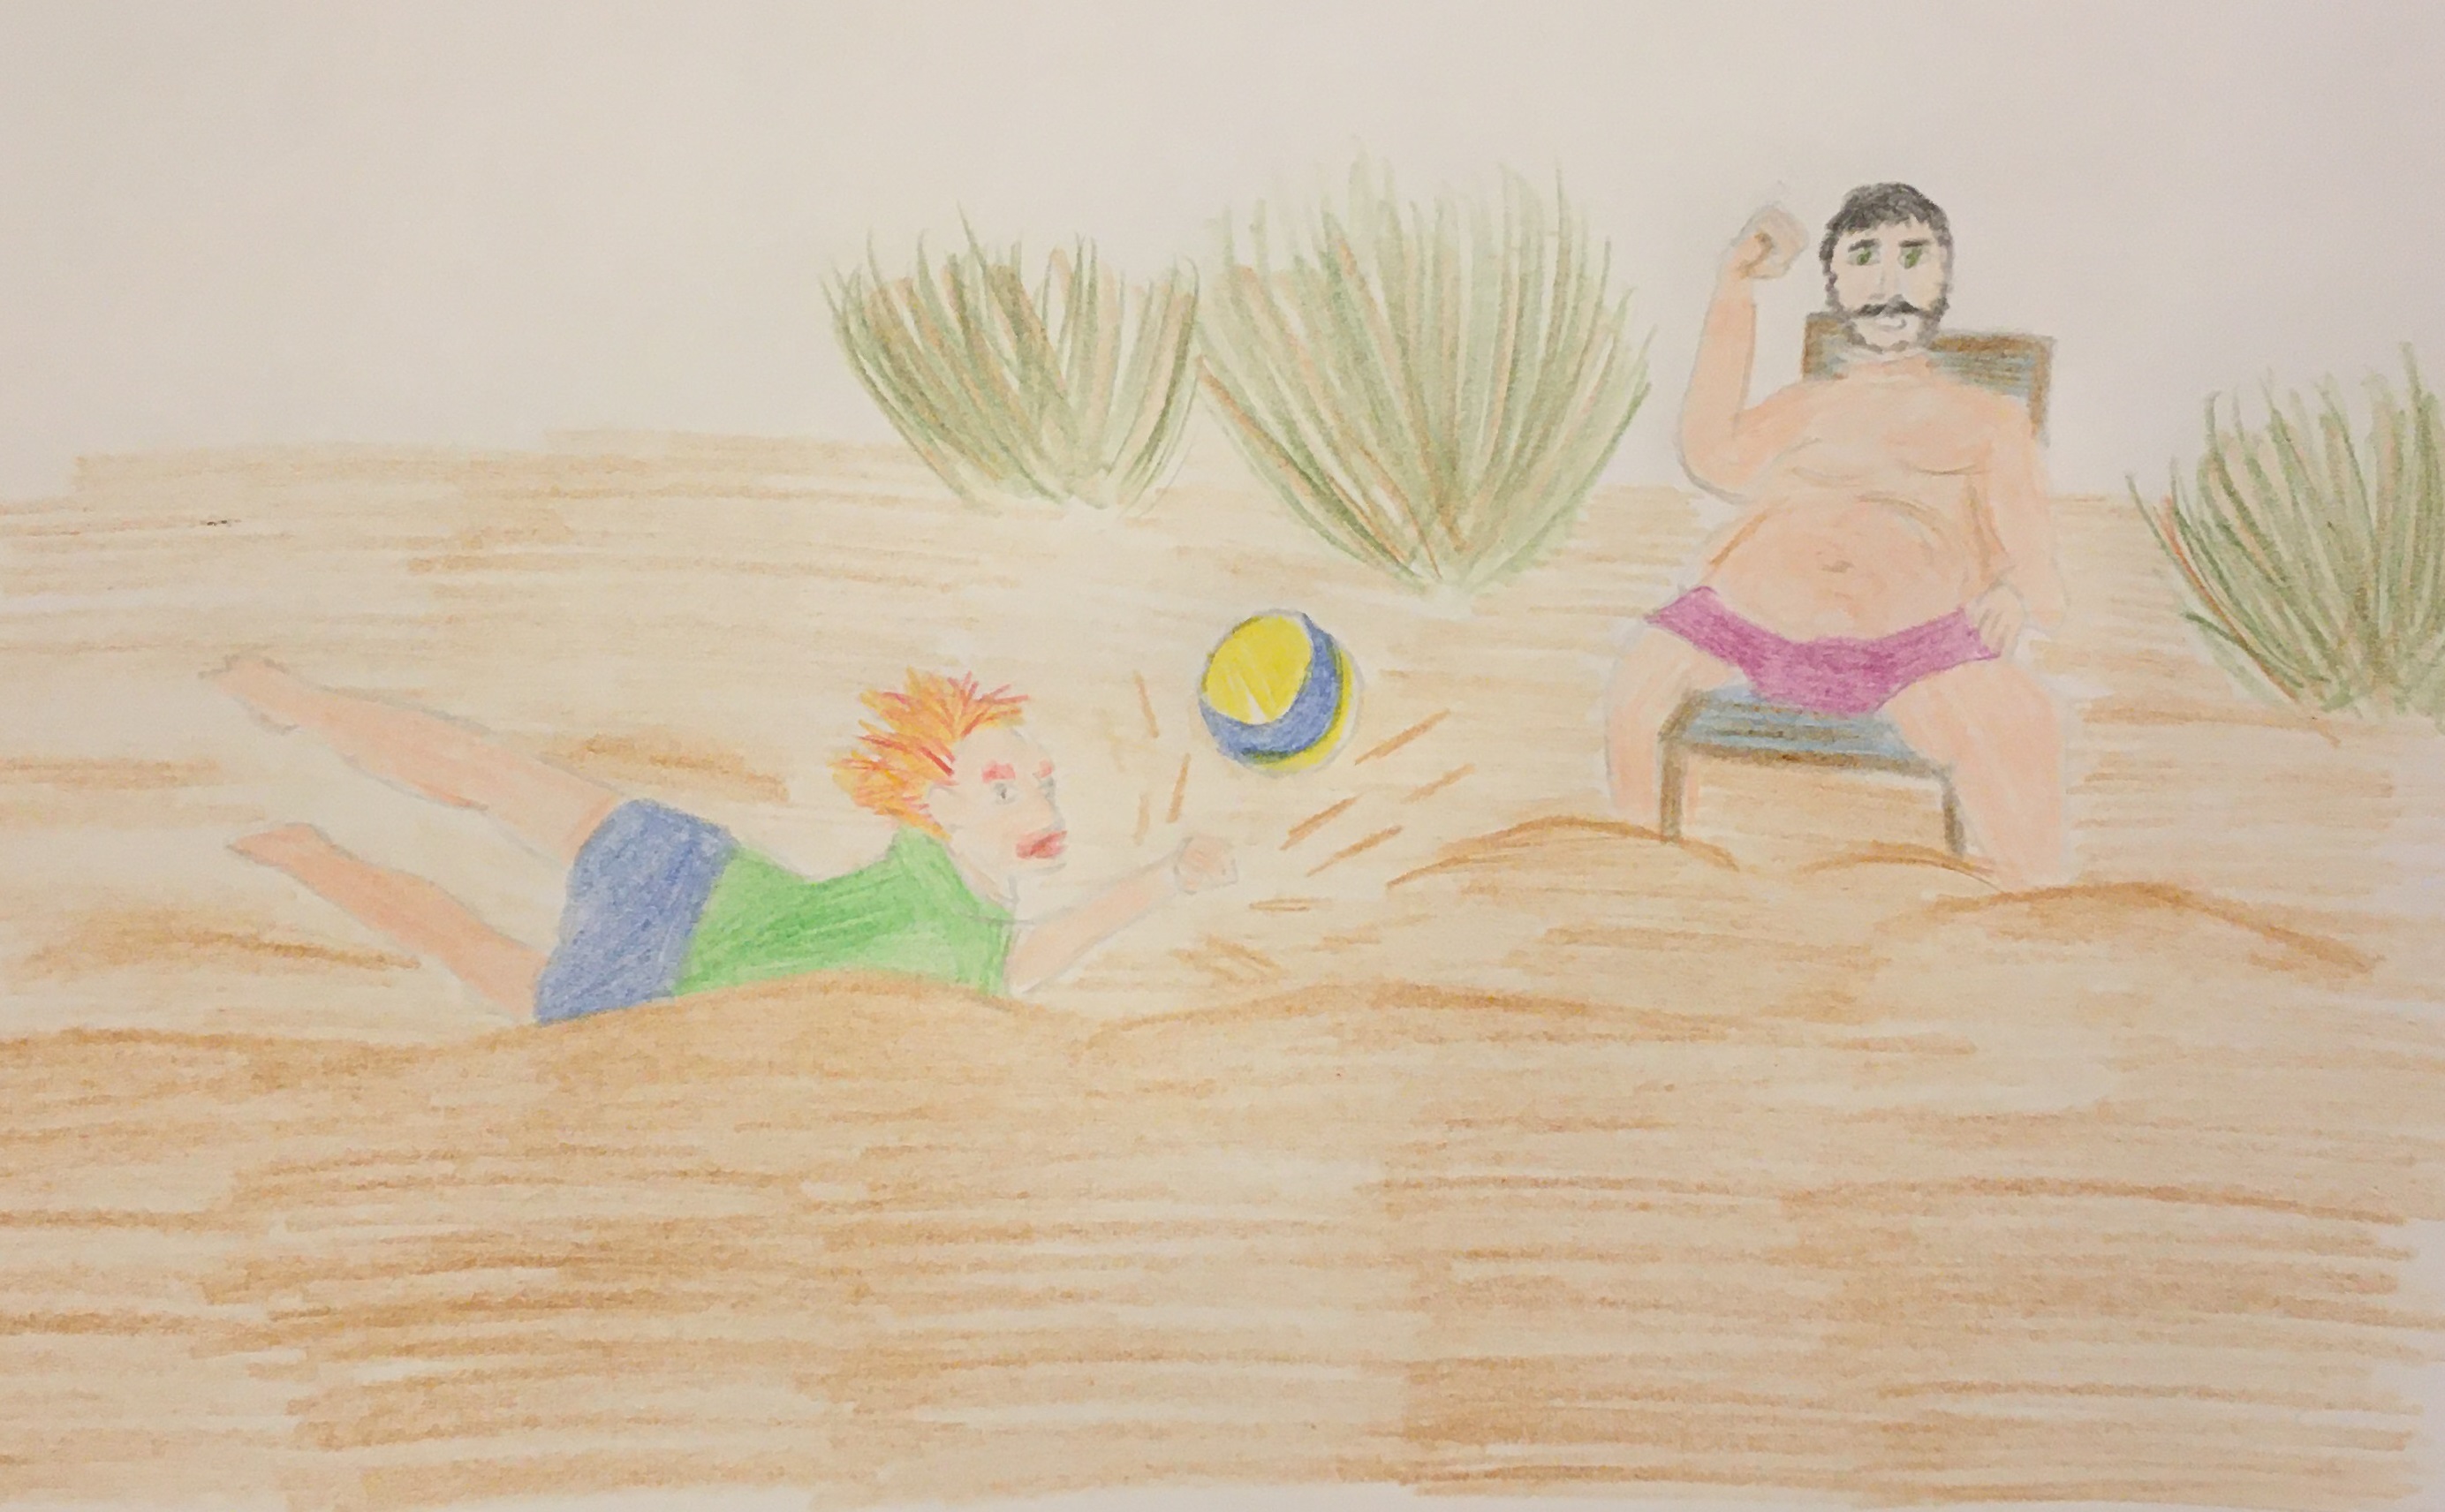 George, in blauen Shorts und grünem T-shirt, schmeißt sich längs in den Sand, um mit einer Hand noch den blau-gelben Beachvolleyball hochzuspielen. Dabei fliegt eine Menge Sand in die Luft. Ein dicker Muggel mit schwarzern Haaren und Schnurrbart in lila Badehose, der daneben auf einem Liegestuhl sitzt, erhebt erbost die Faust.